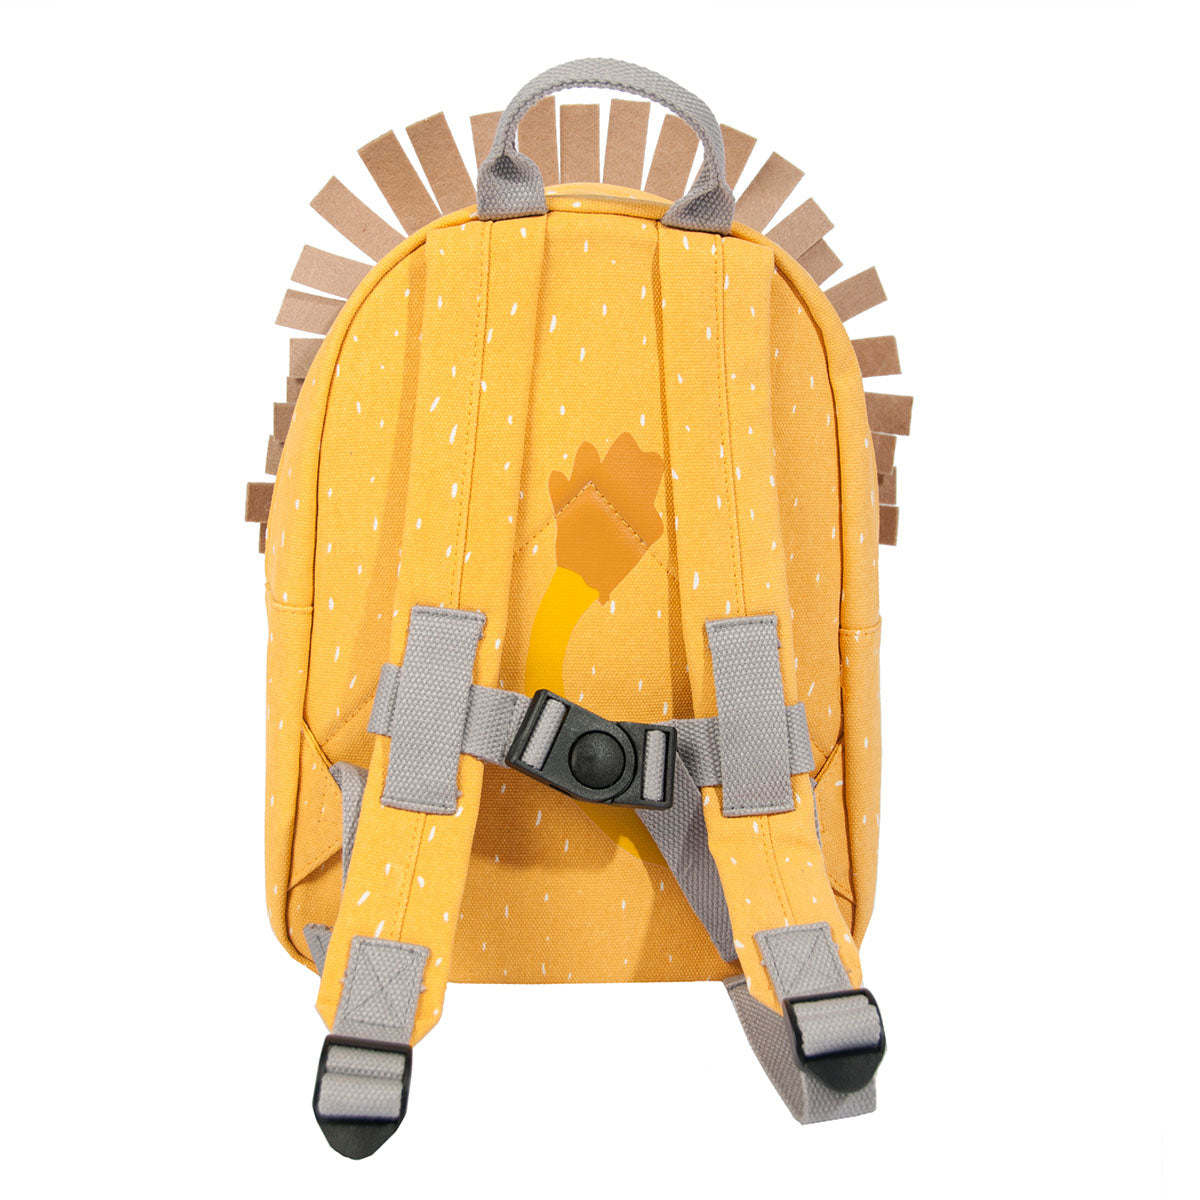 Met de Trixie Mr. Lion rugzak ben je klaar voor avontuur! In deze gele schooltas kan je al je spulletjes kwijt voor een dagje weg. De gele rugzak komt in de vorm van een stoere leeuw. VanZus.